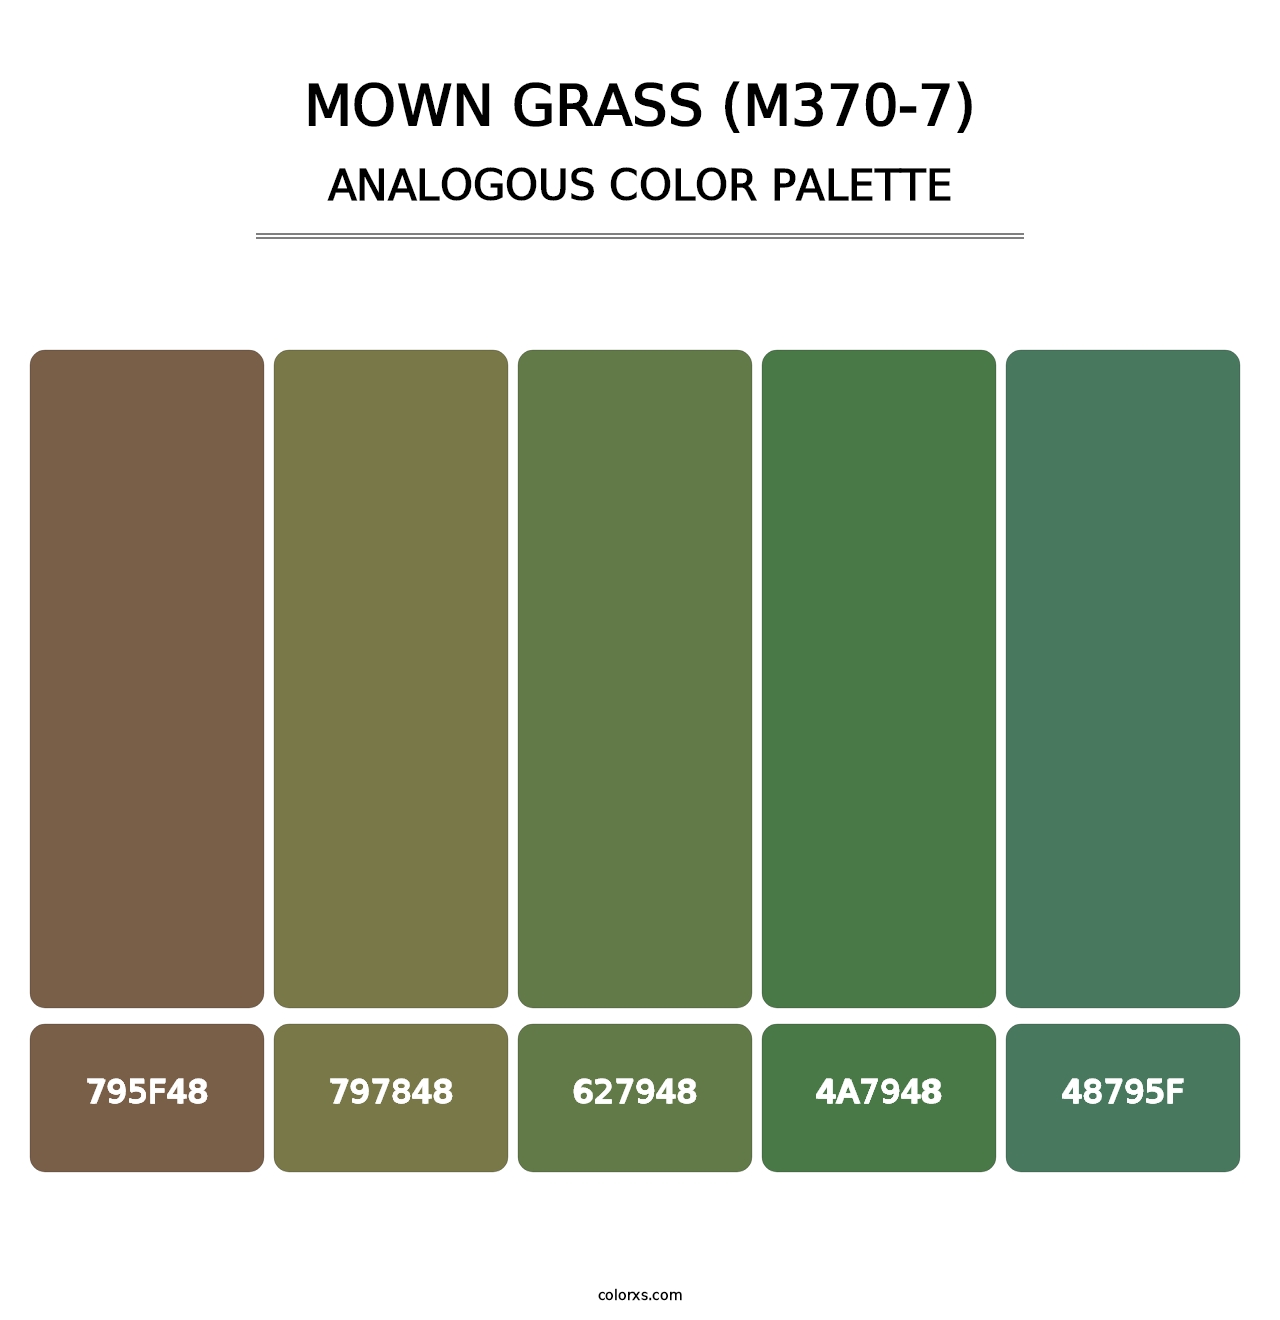 Mown Grass (M370-7) - Analogous Color Palette